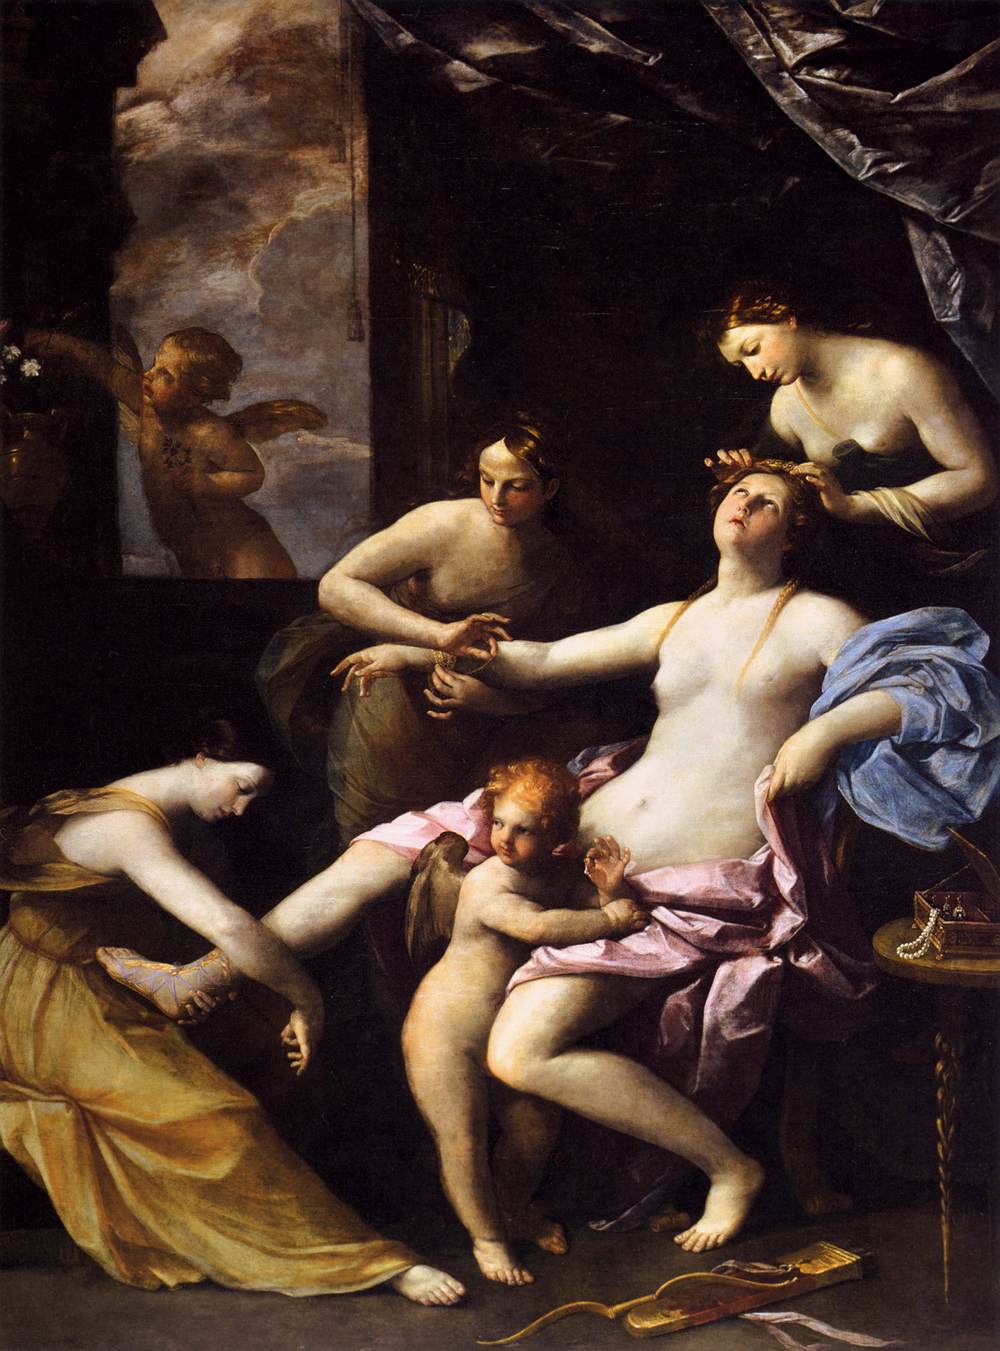 Cuidado Bolos persecucion Mito y realidad: La Venus del Espejo de Velázquez - Investigart